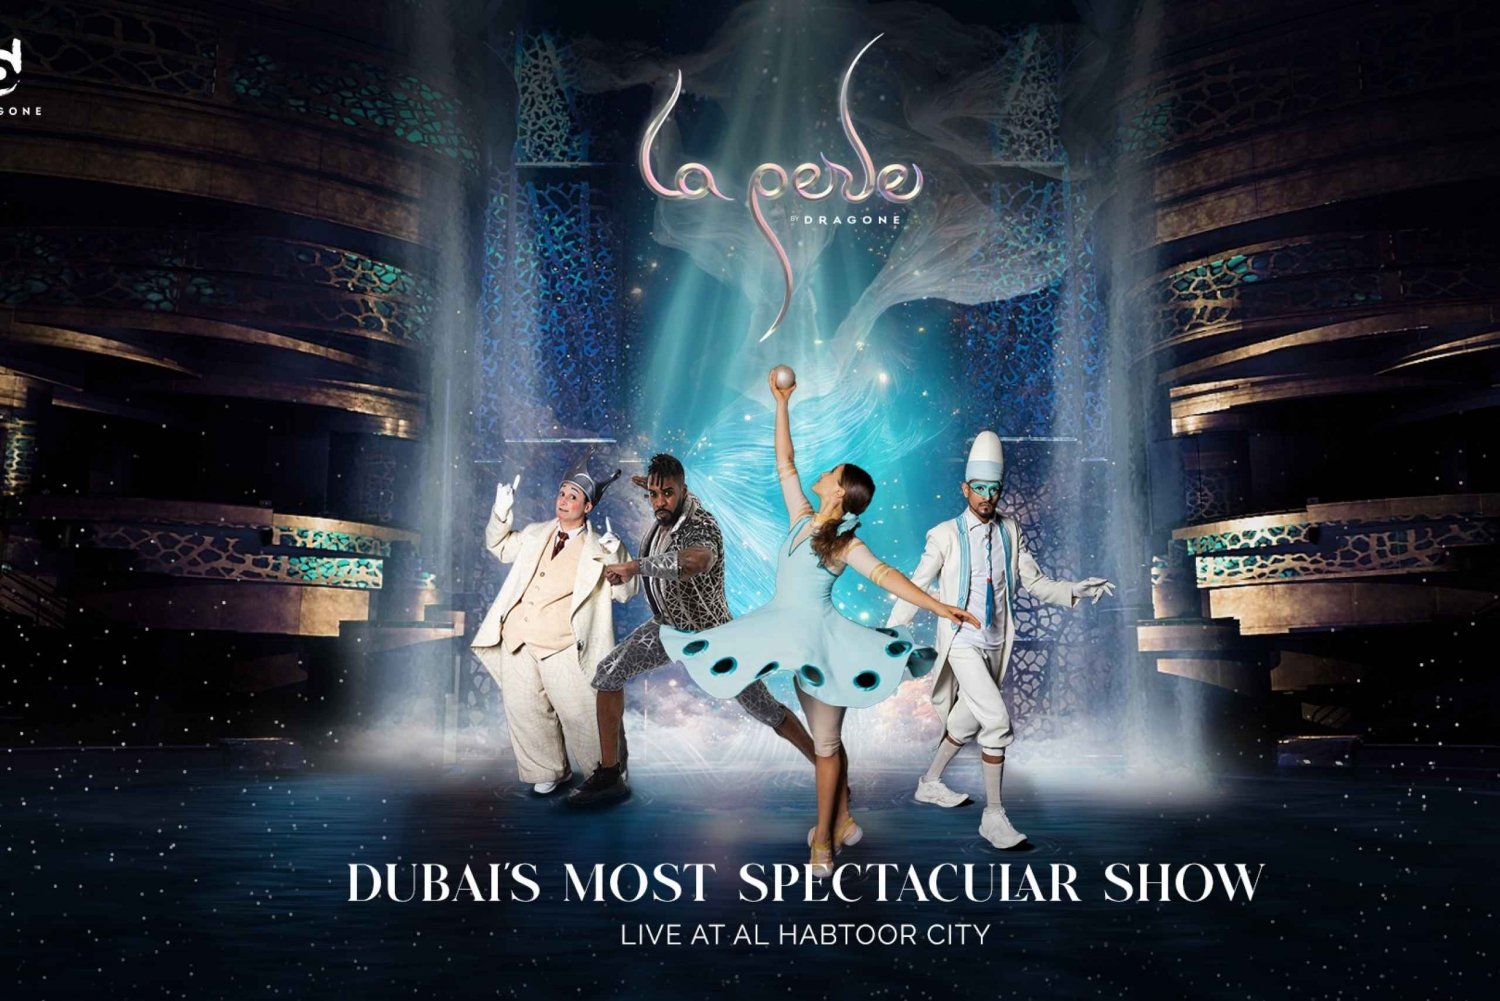 Dubai: Entradas para el espectáculo La Perle by Dragone